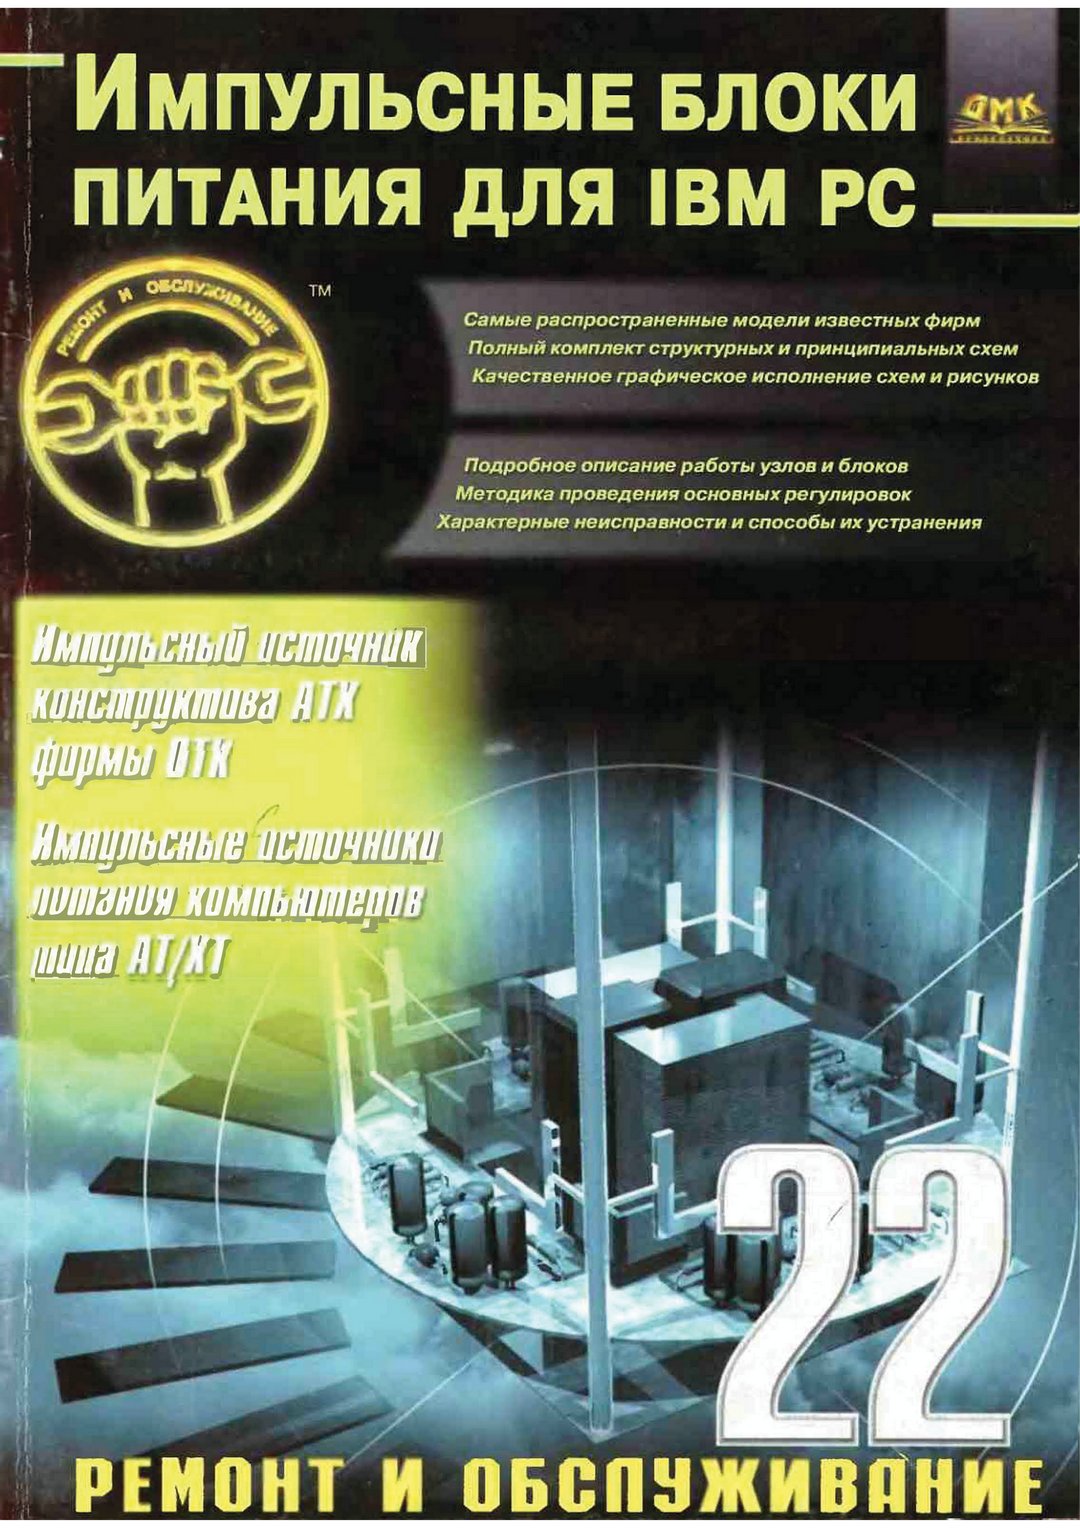 Импульсные блоки питания для IBM PC (Александр Куличков) 2000г.